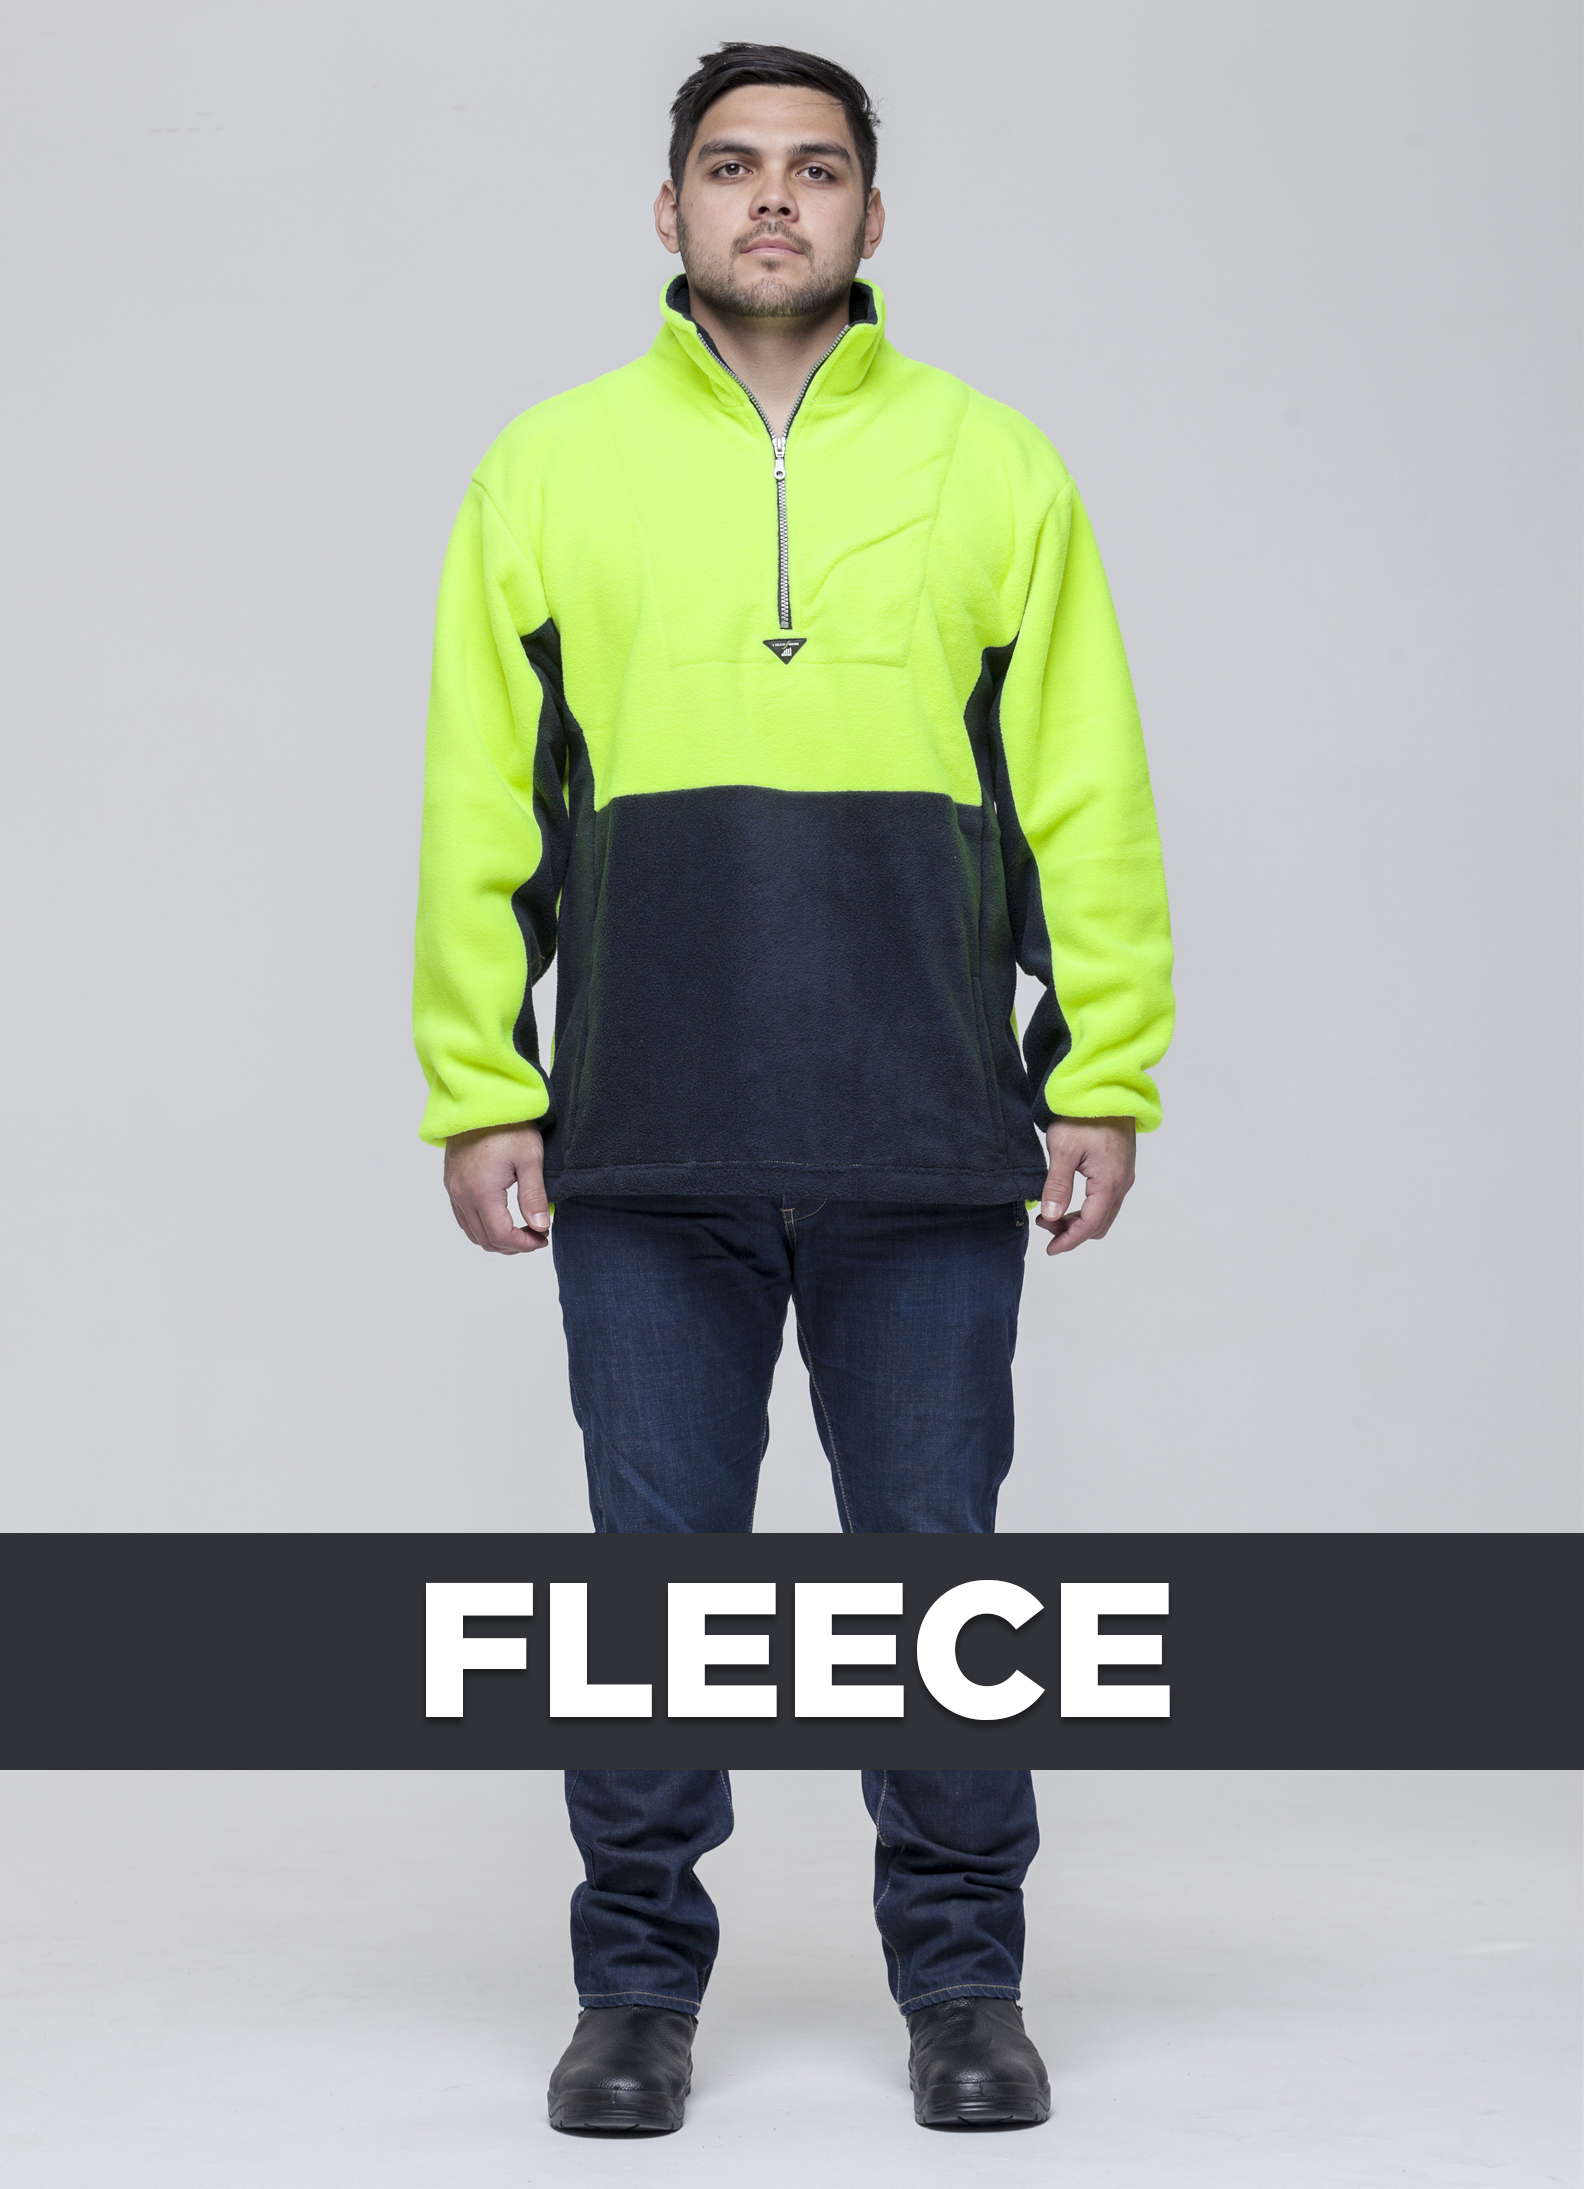 Fleece.jpg